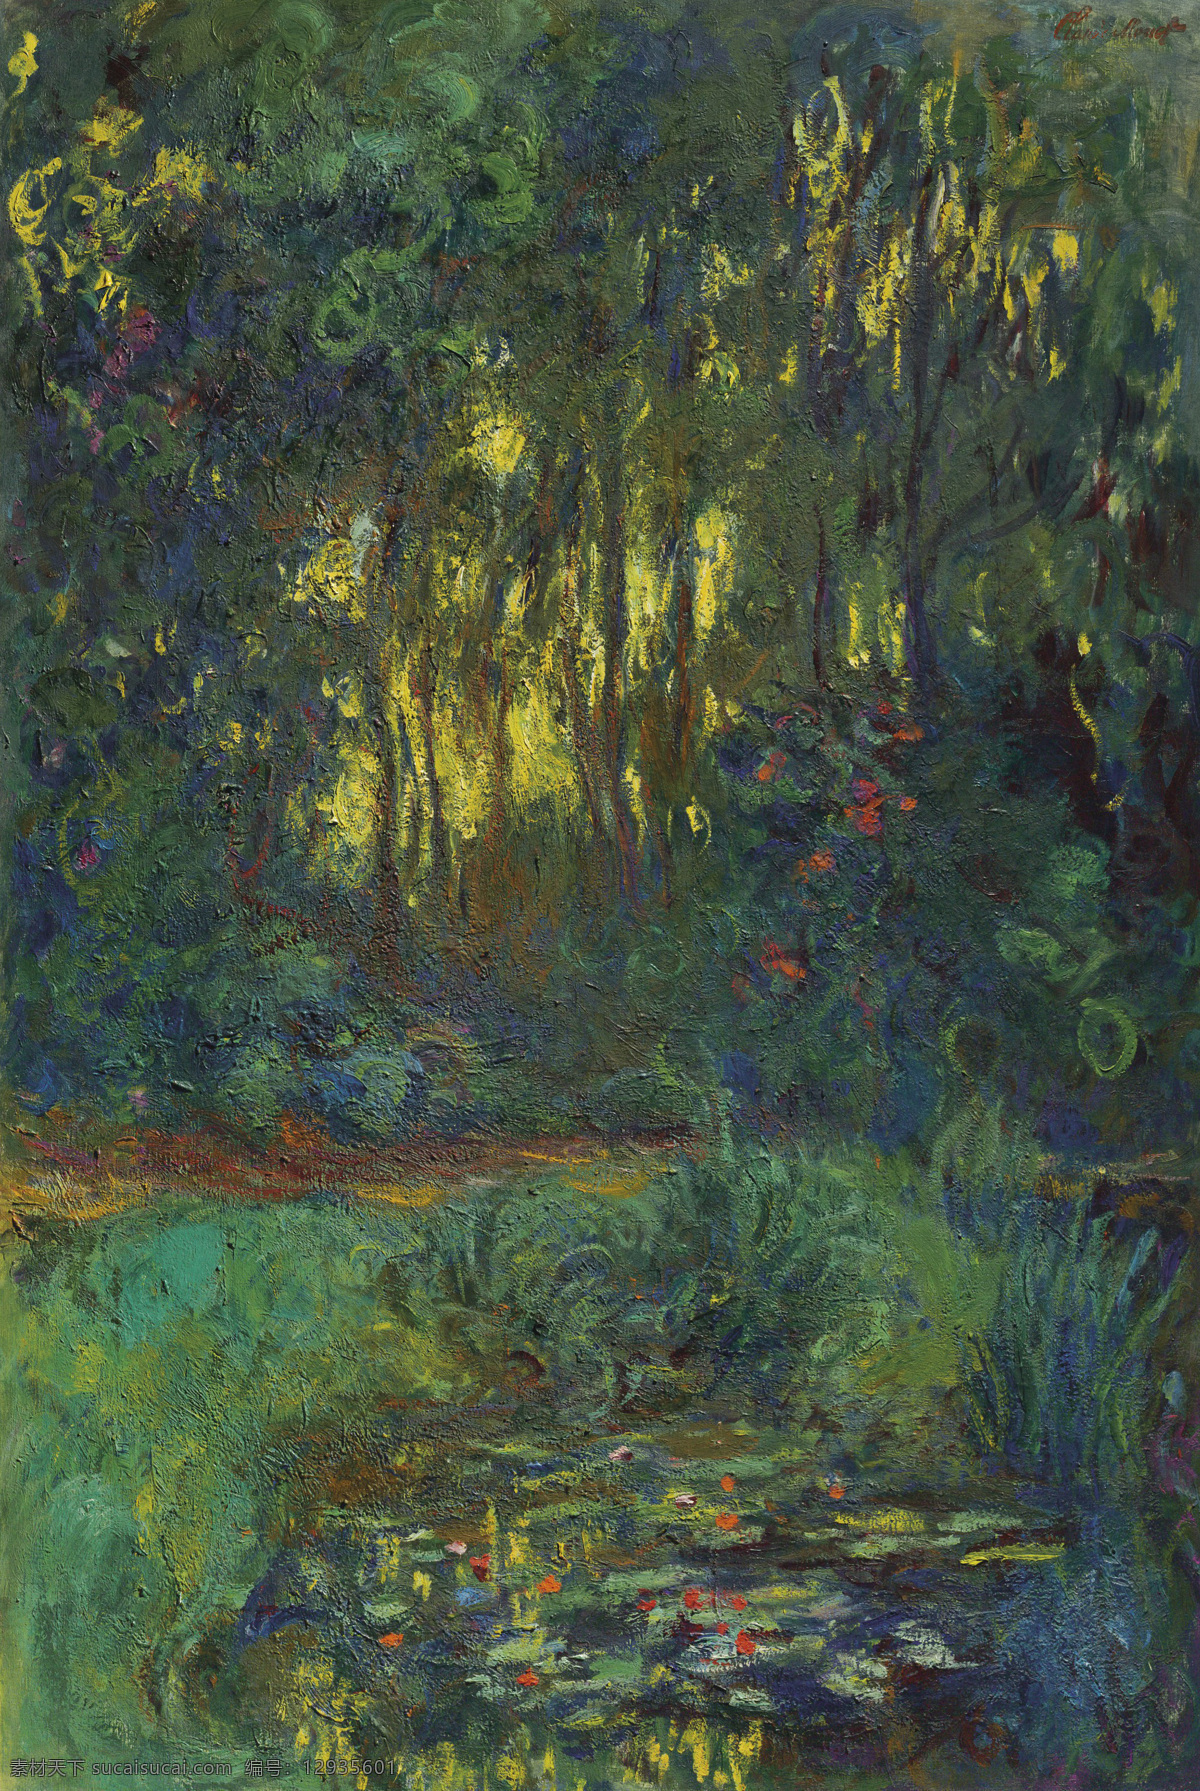 克劳德 莫 奈 作品 法国画家 著名 印象画派大师 池塘里的睡莲 园森 郁郁葱葱 19世纪油画 油画 文化艺术 绘画书法